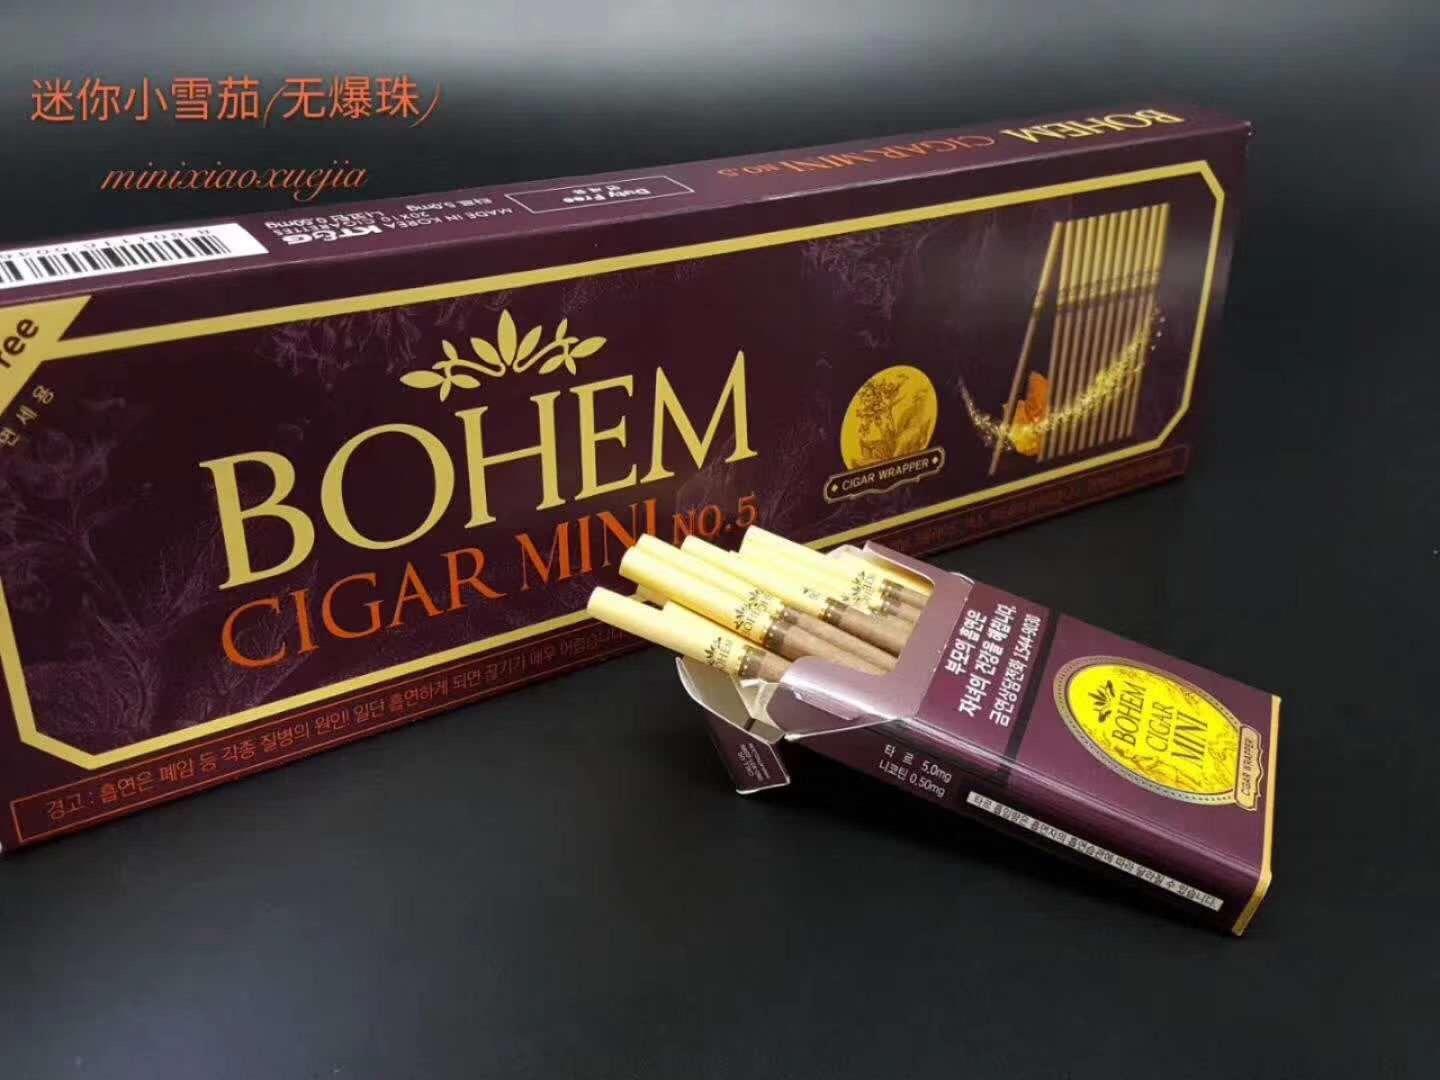 韩免宝恒mini小雪茄  bohem cigar mini焦油量:1mg韩国kt&g公司出品的